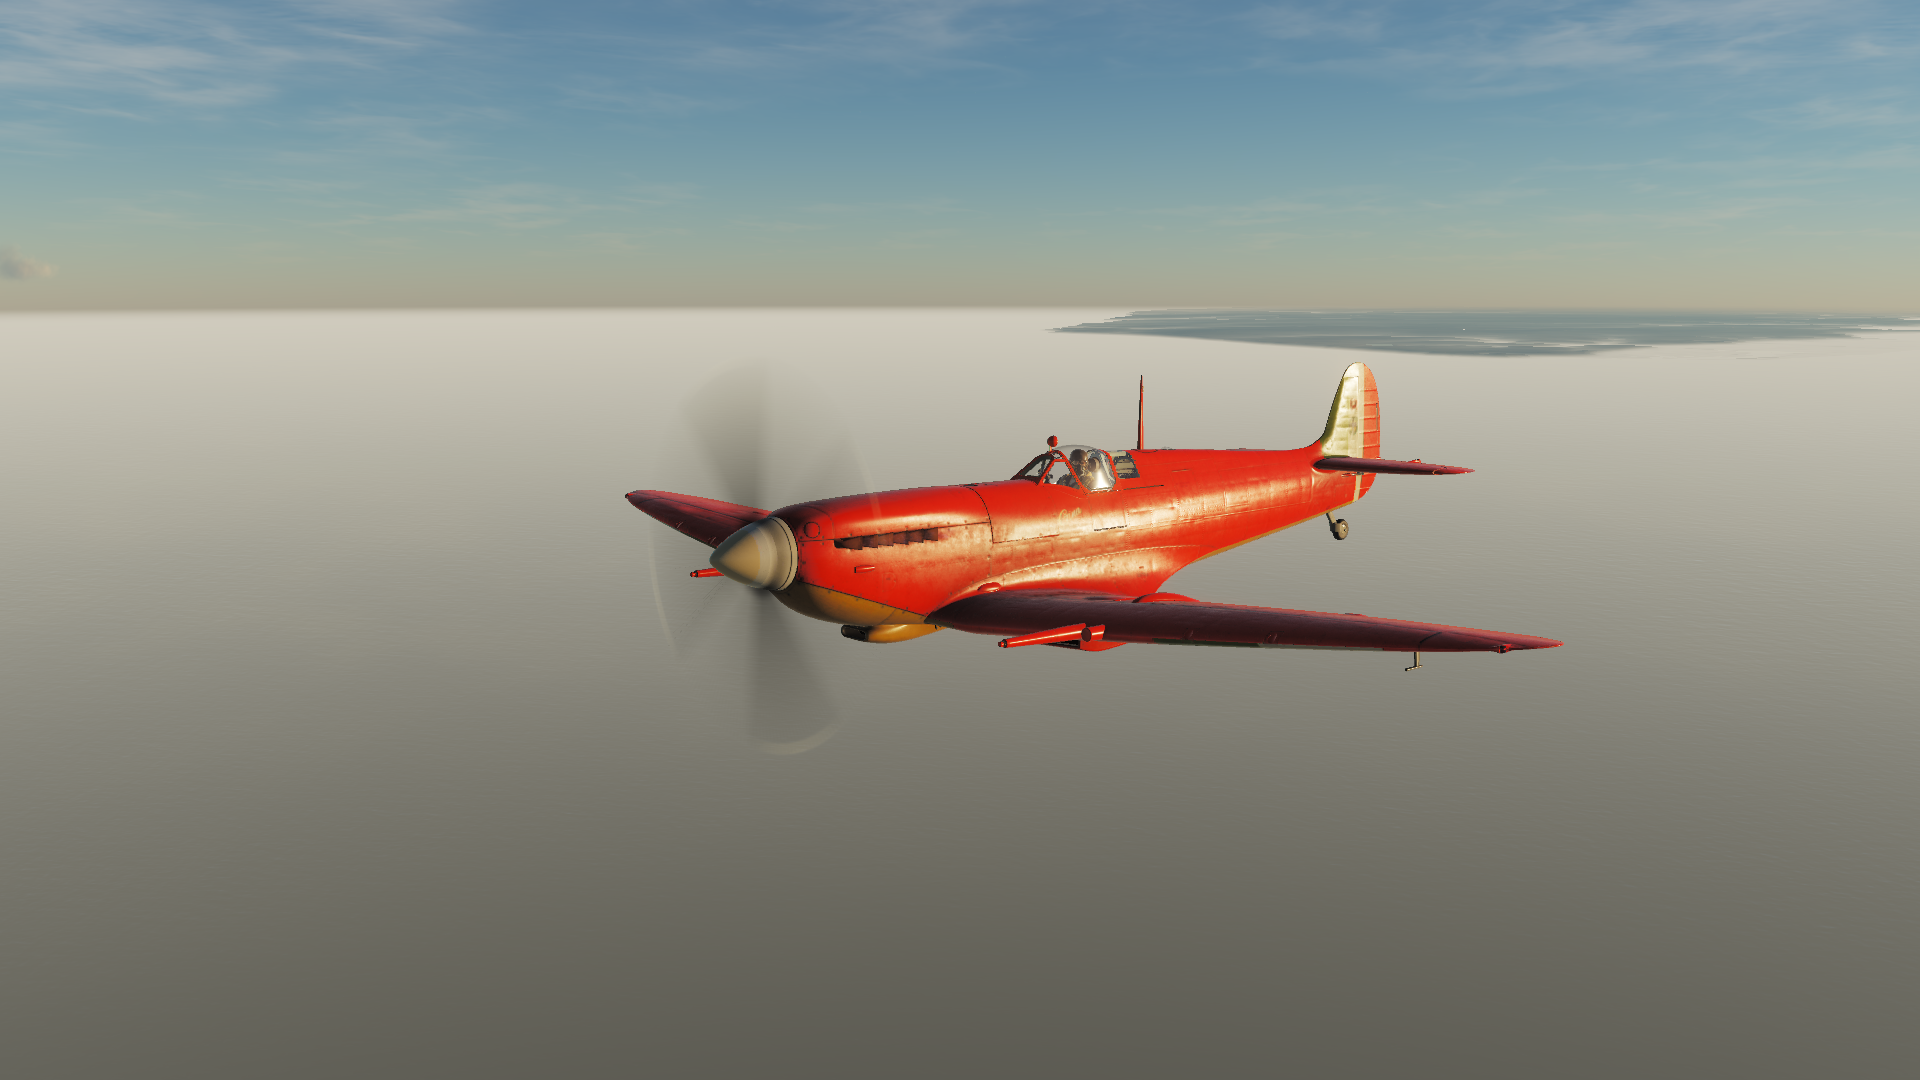 [Fictional] Spitfire LF Mk.IX Porco Rosso inspired livery